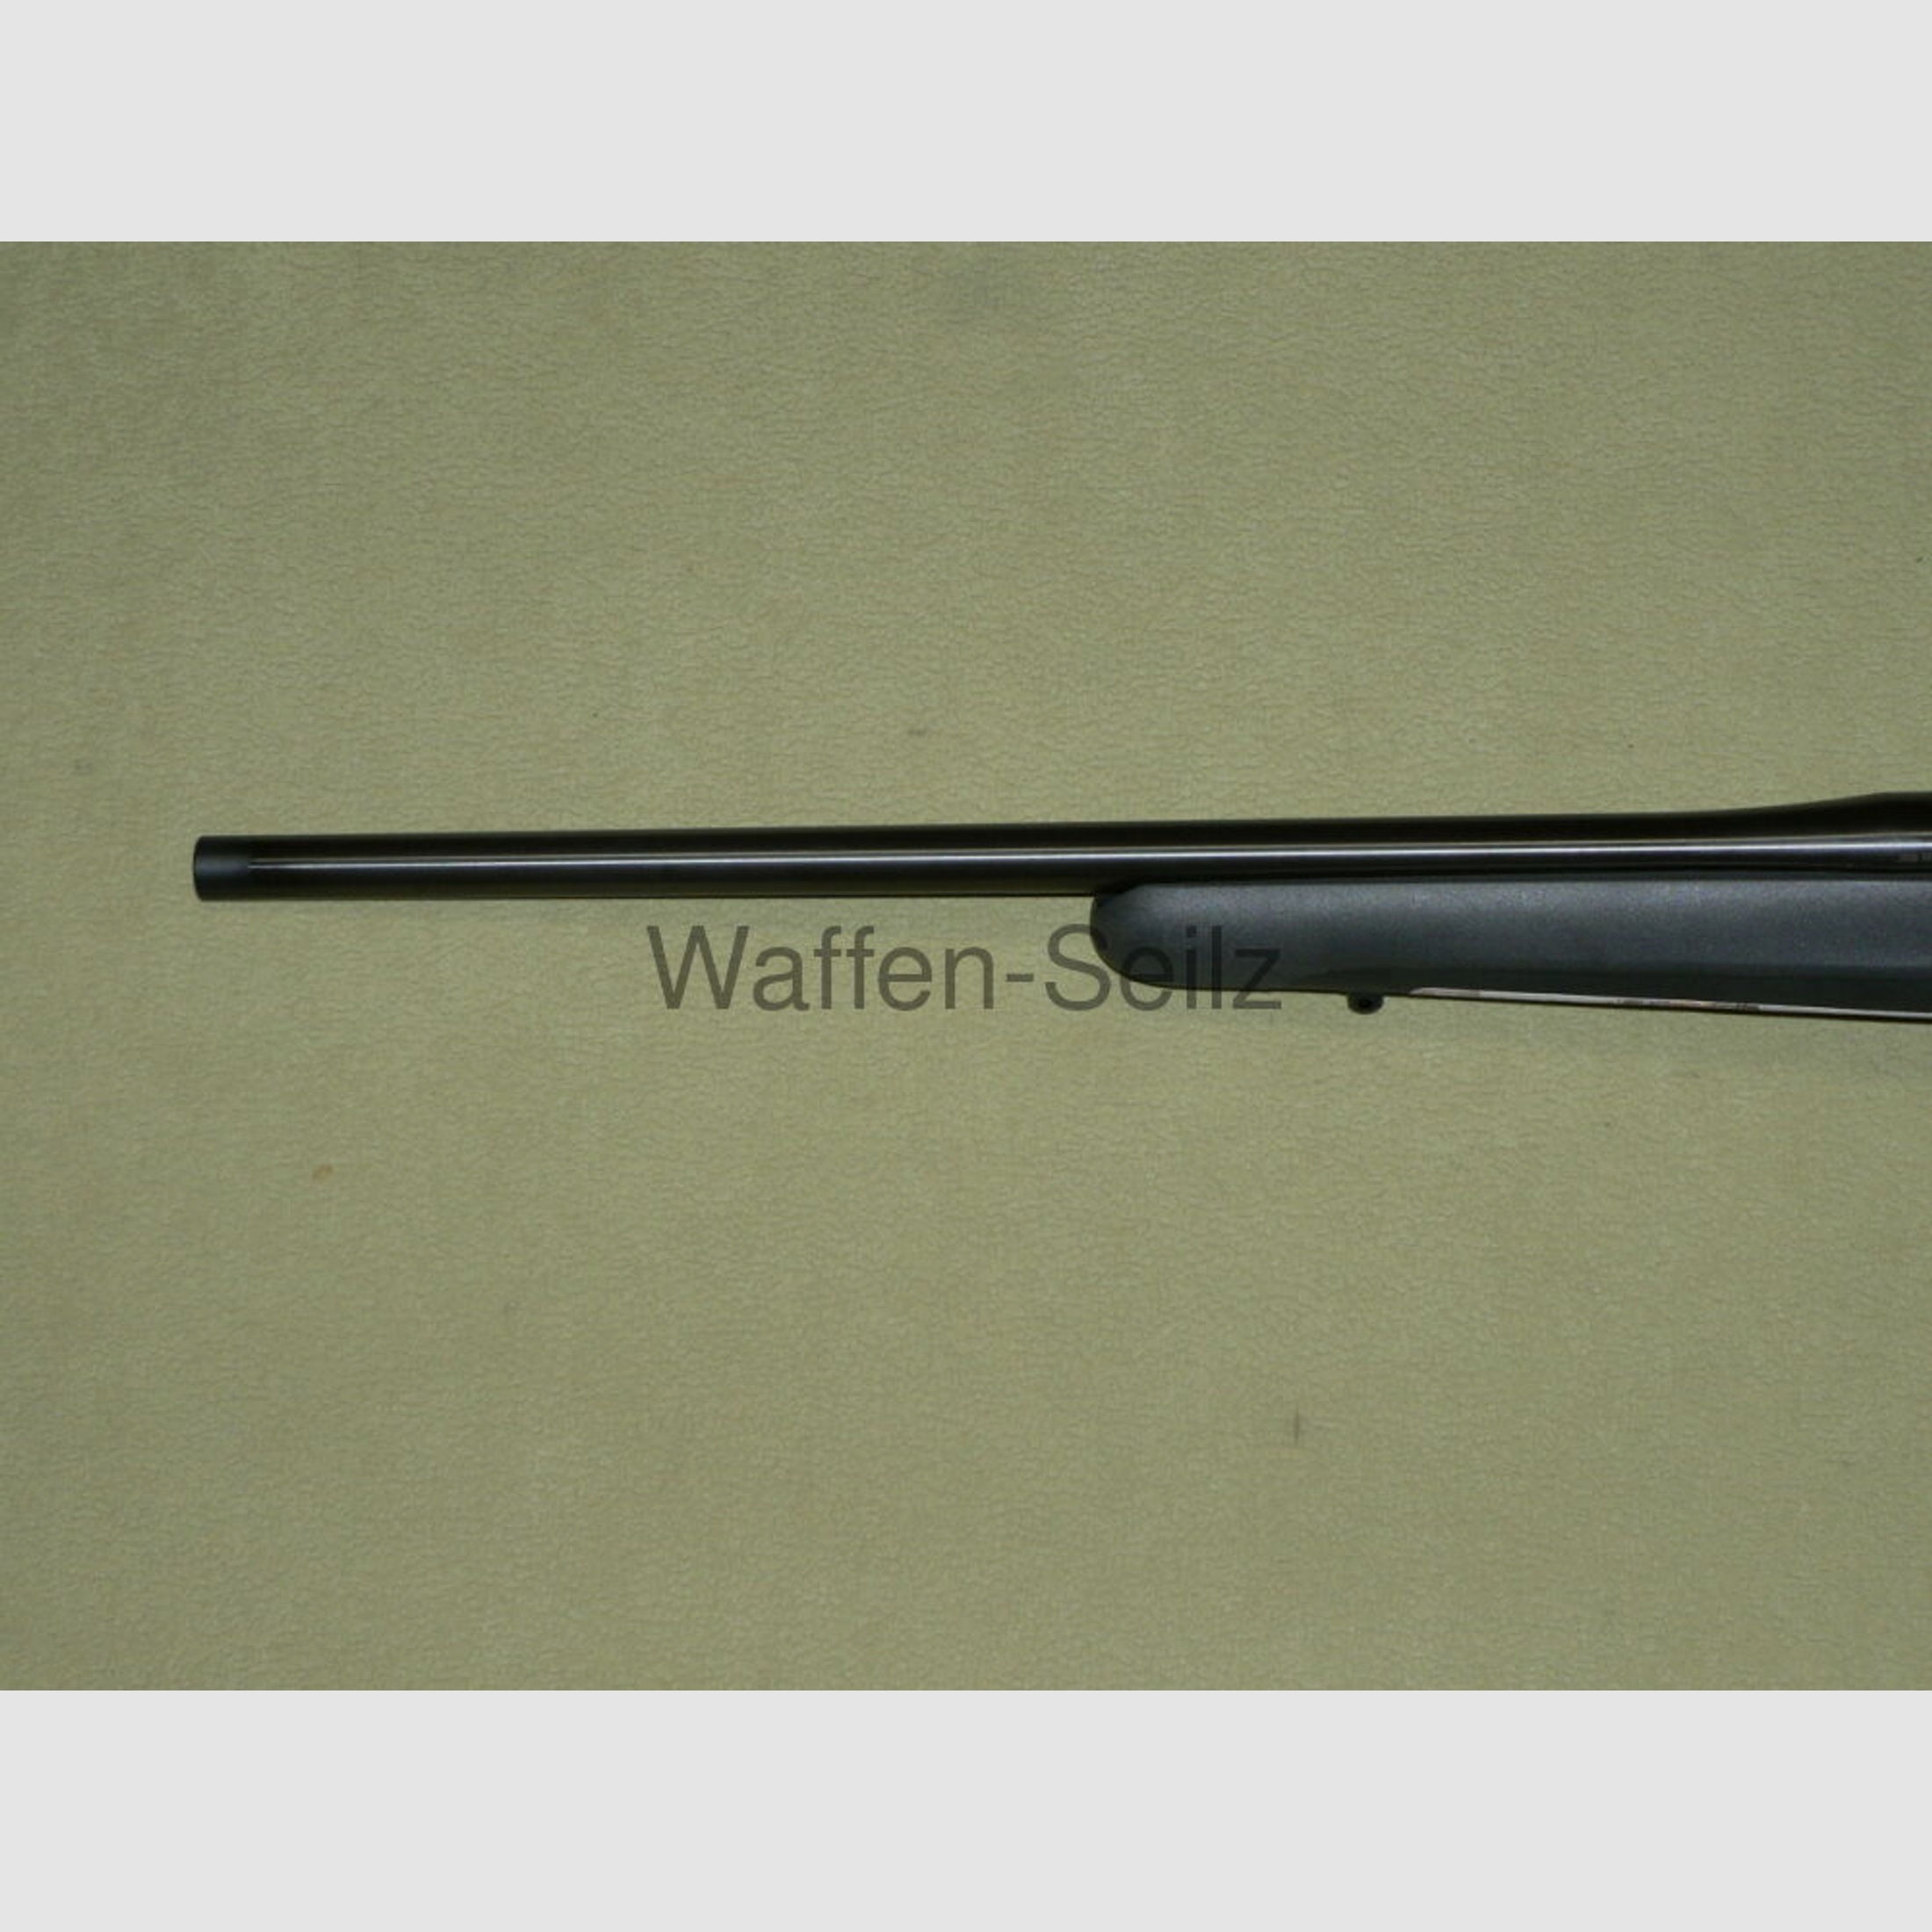 Mauser	 M18